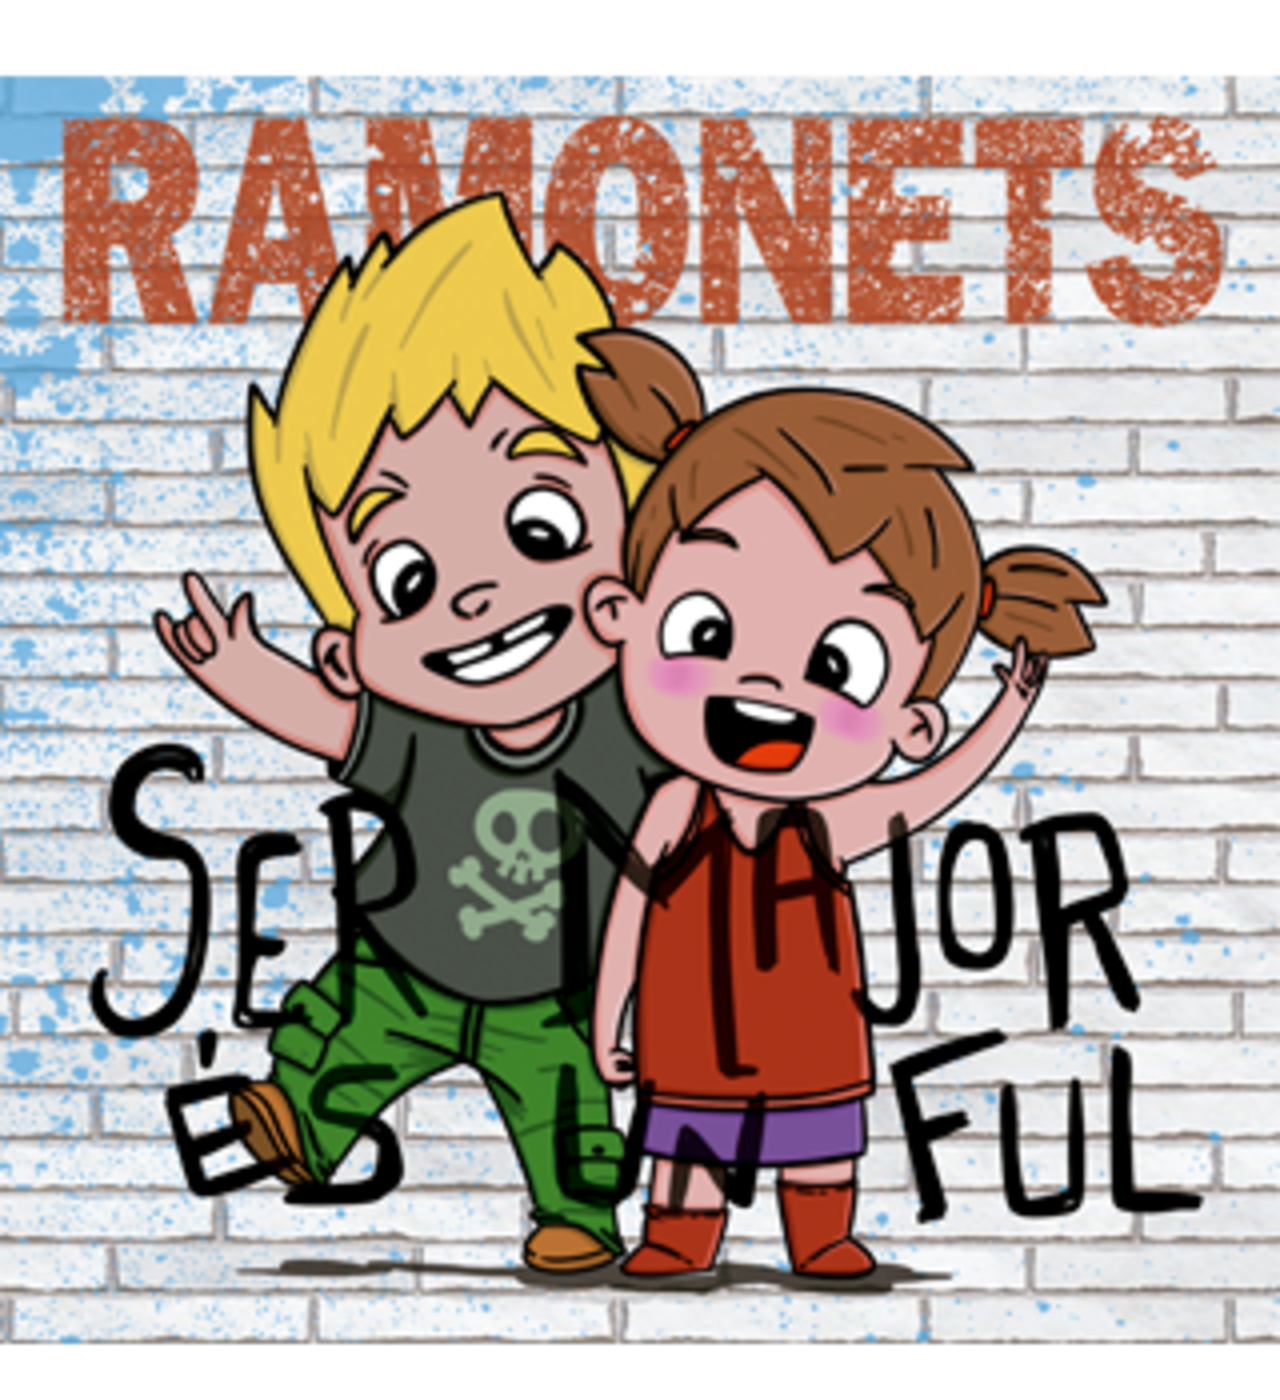 Ramonets - Ser major és un ful | musica en valencià